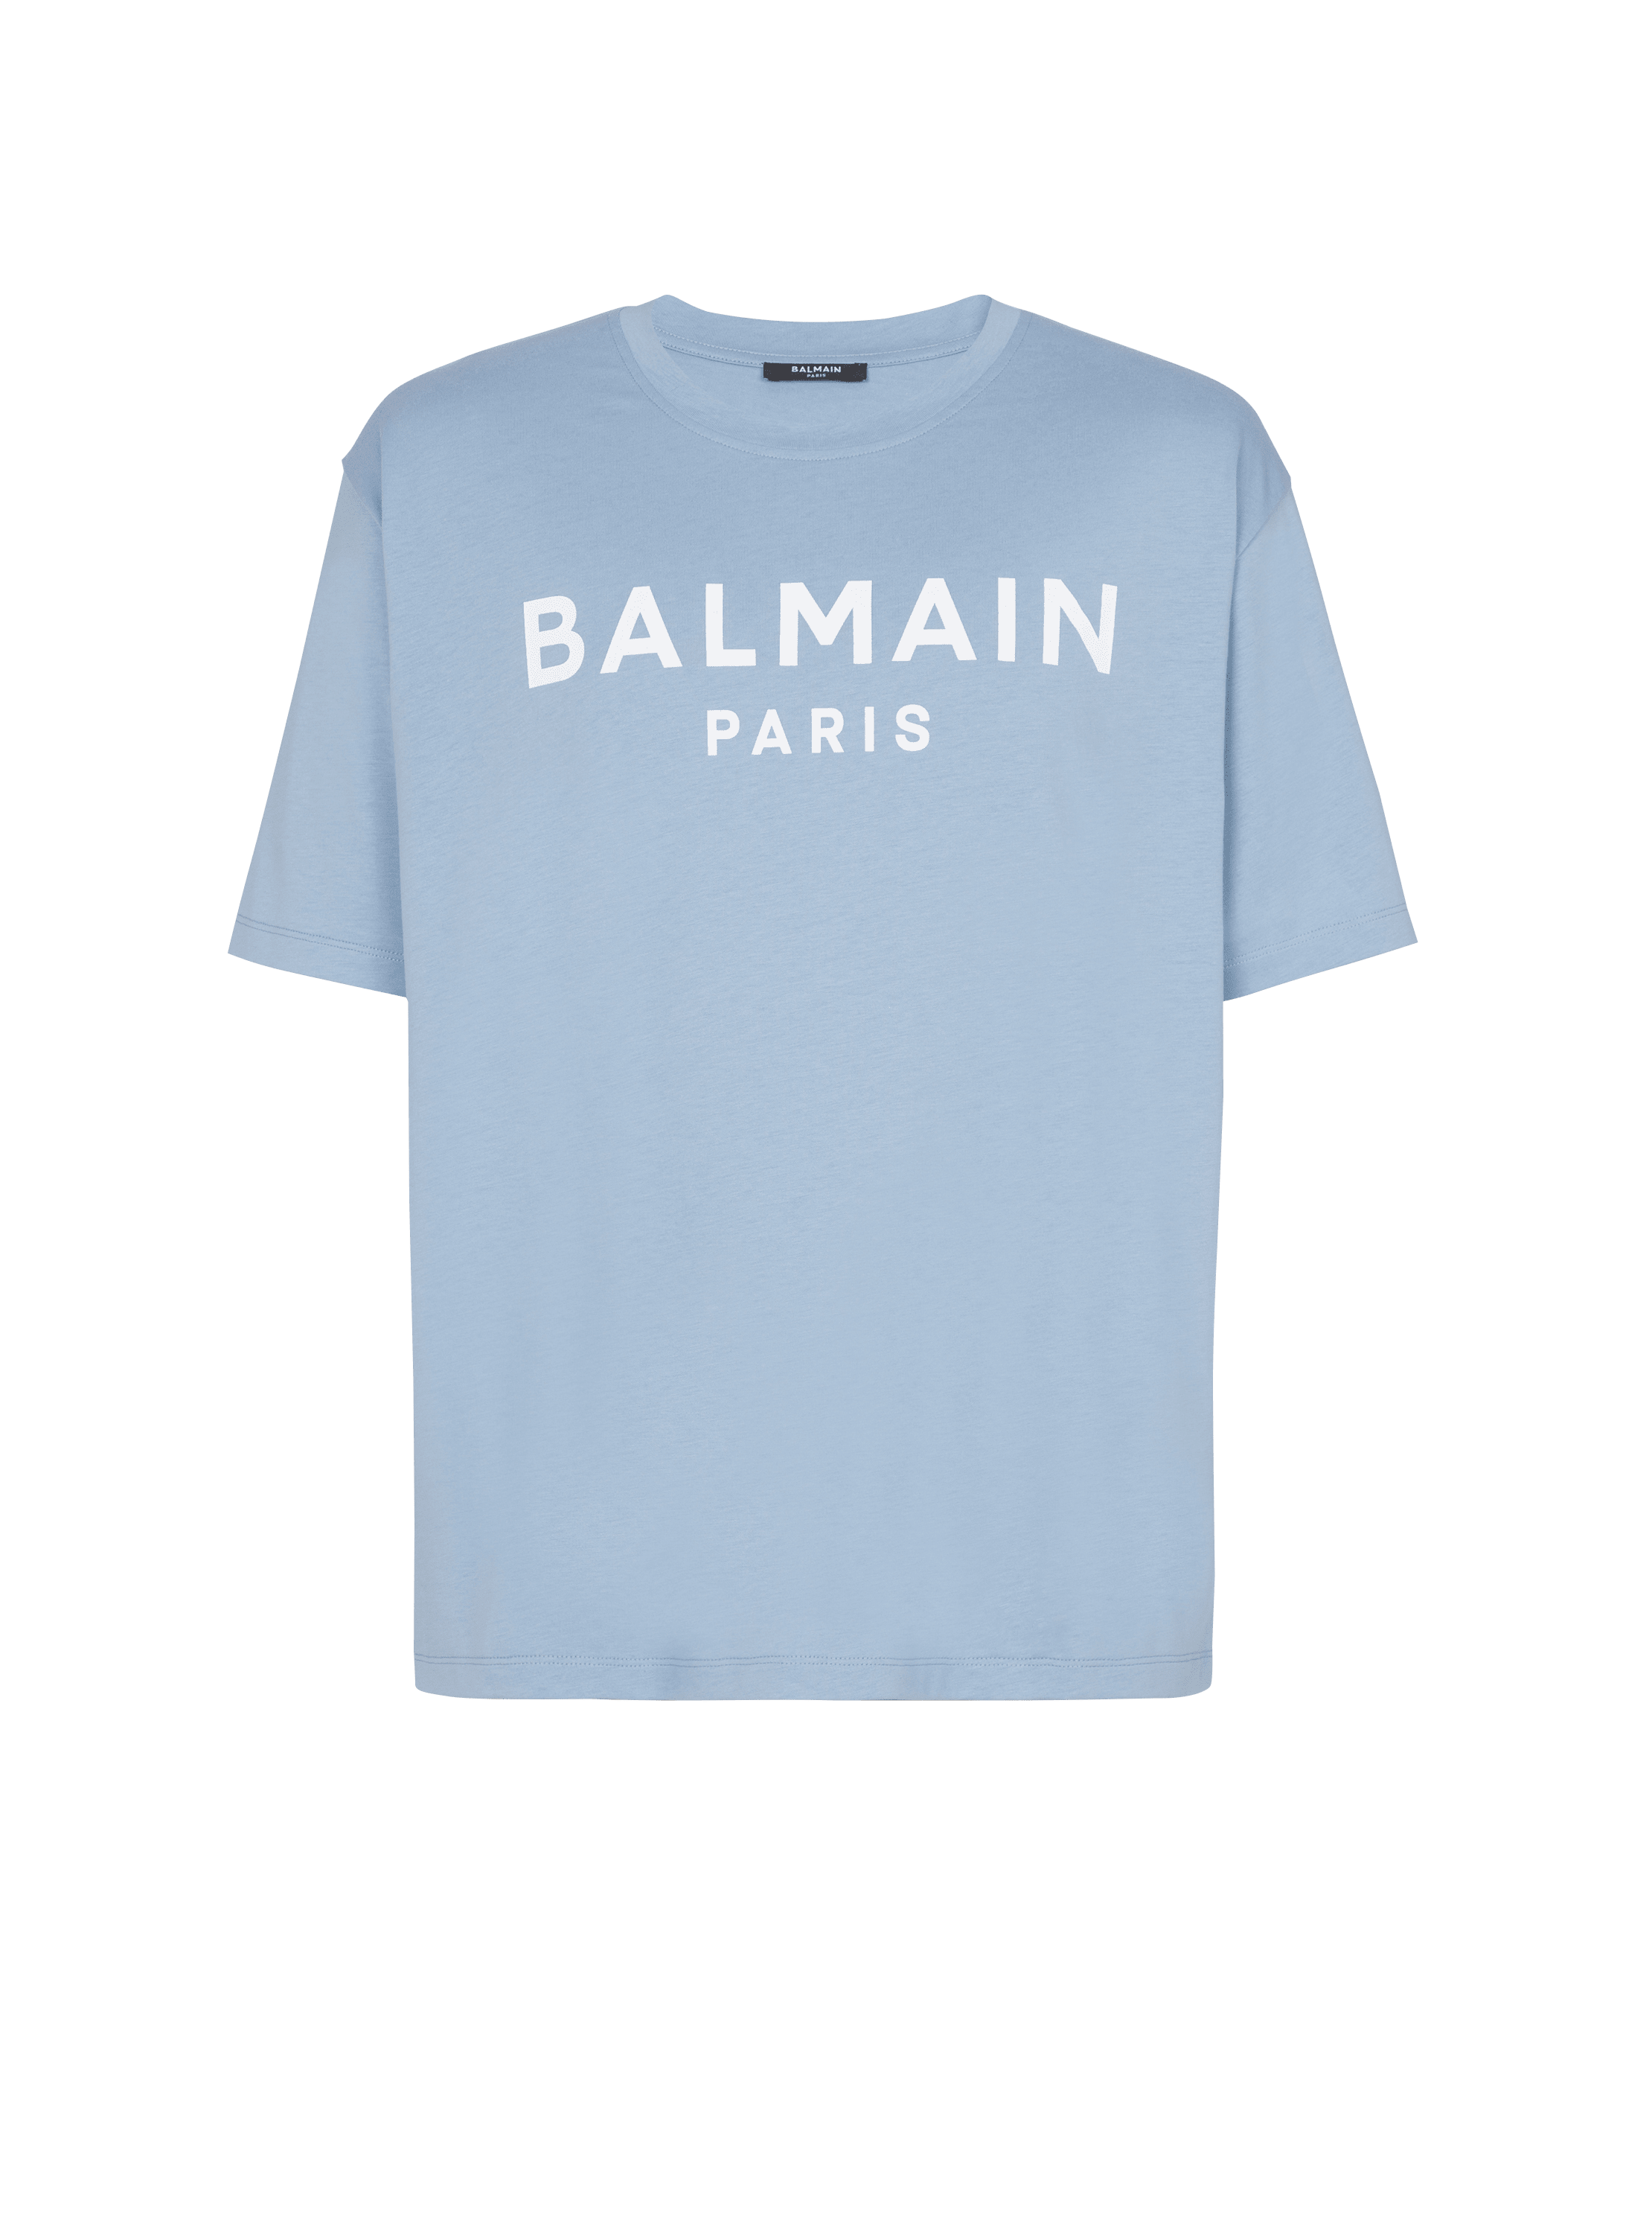 Balmain Paris T-shirt - Men | BALMAIN